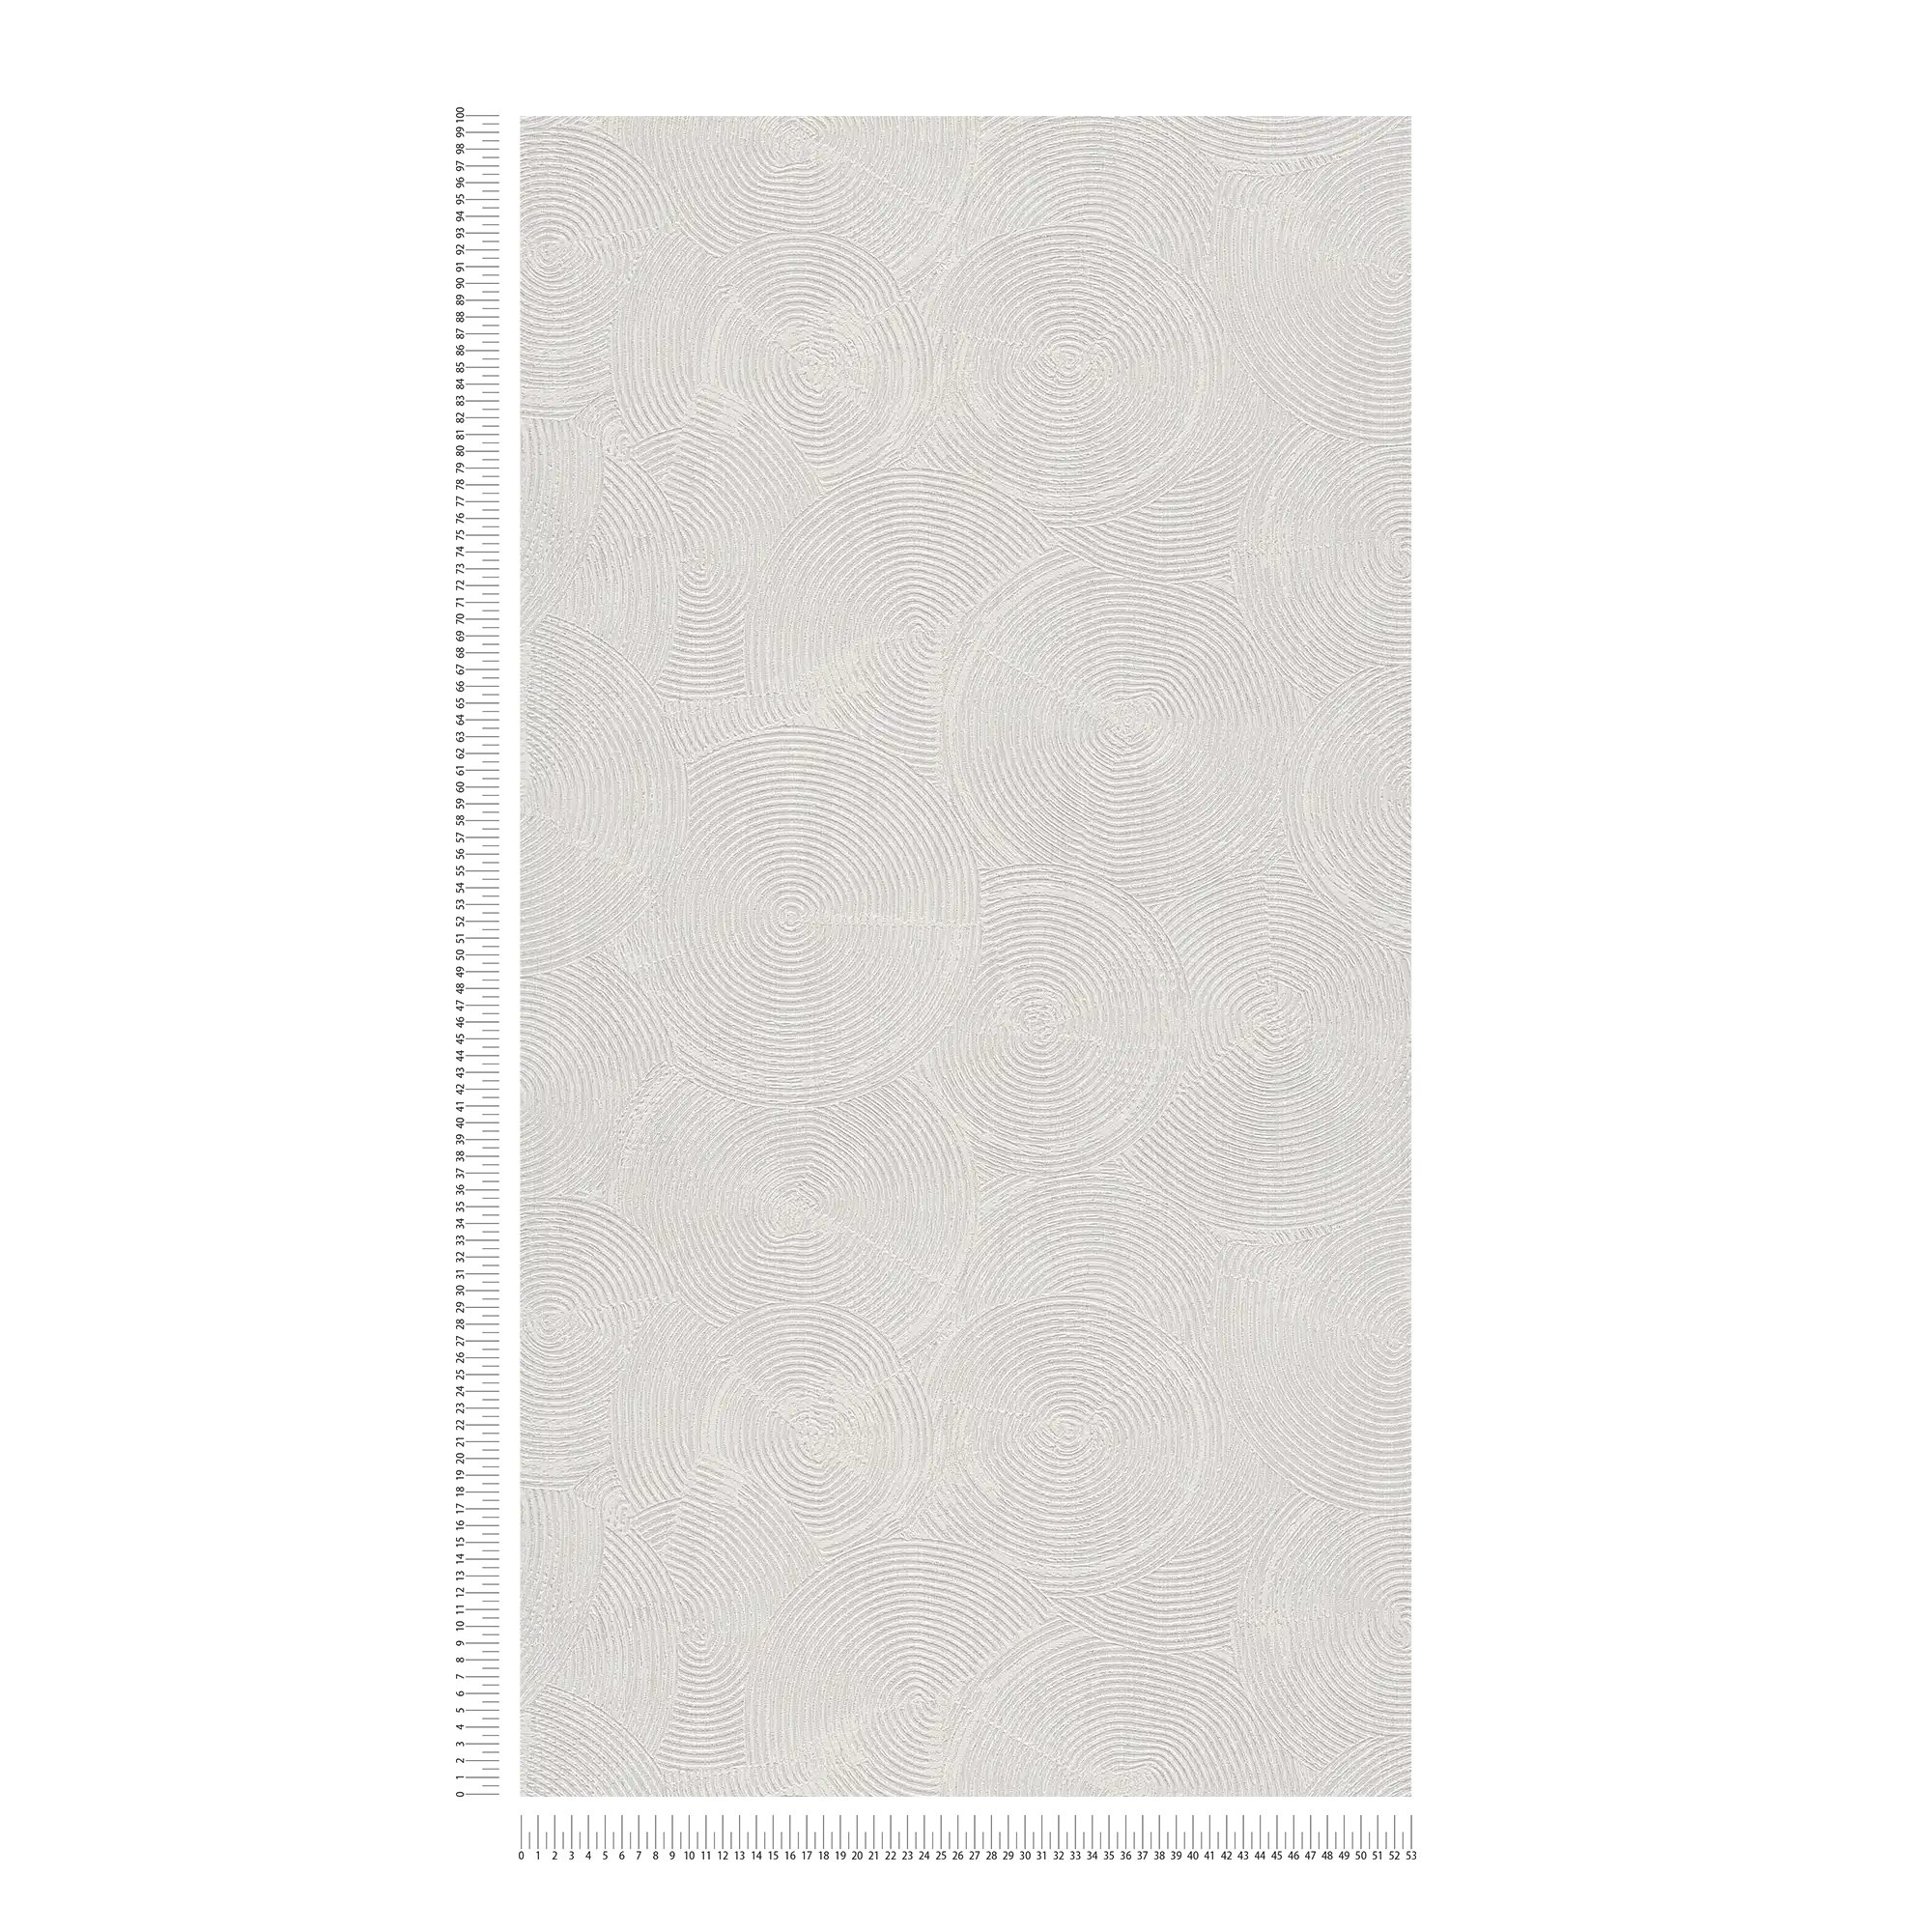             Behang met moderne gipslook & metallic accenten - grijs, metallic, wit
        